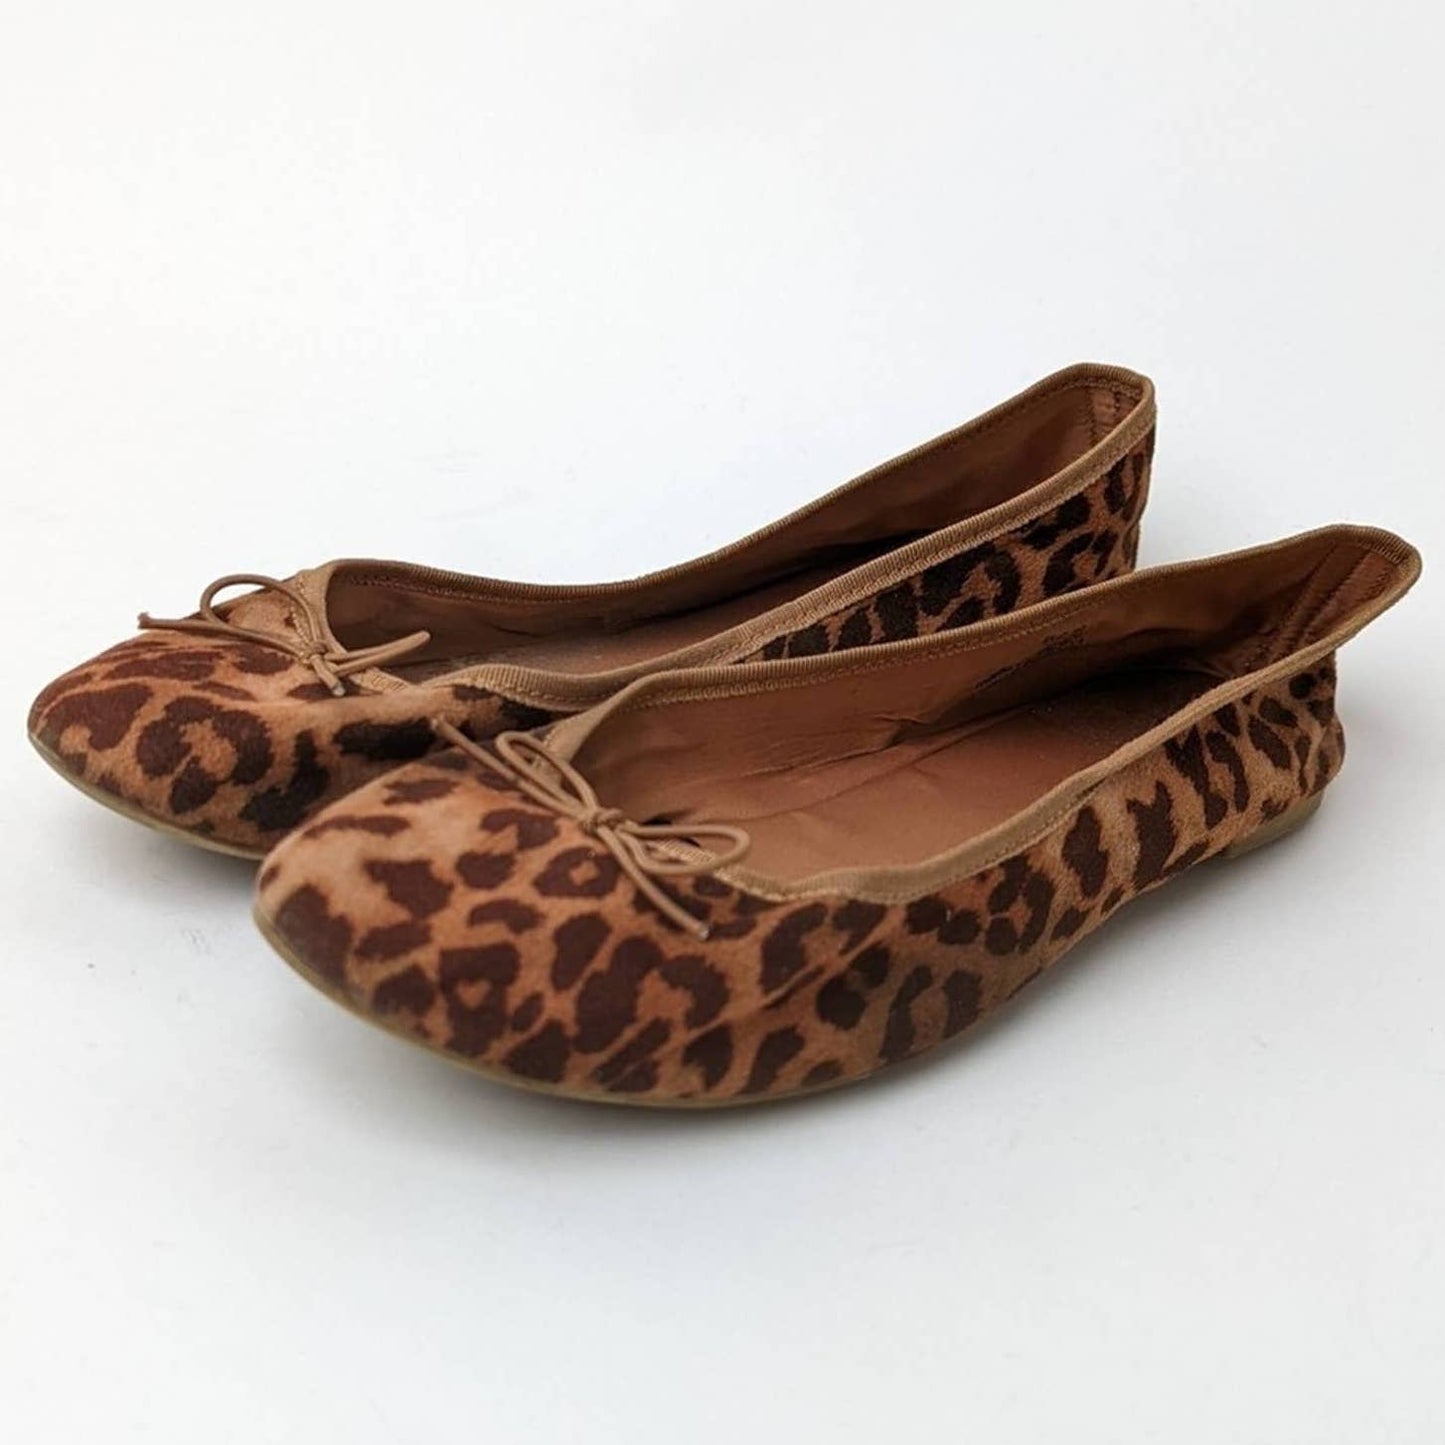 H & M Cheetah Ballet Flats - 8